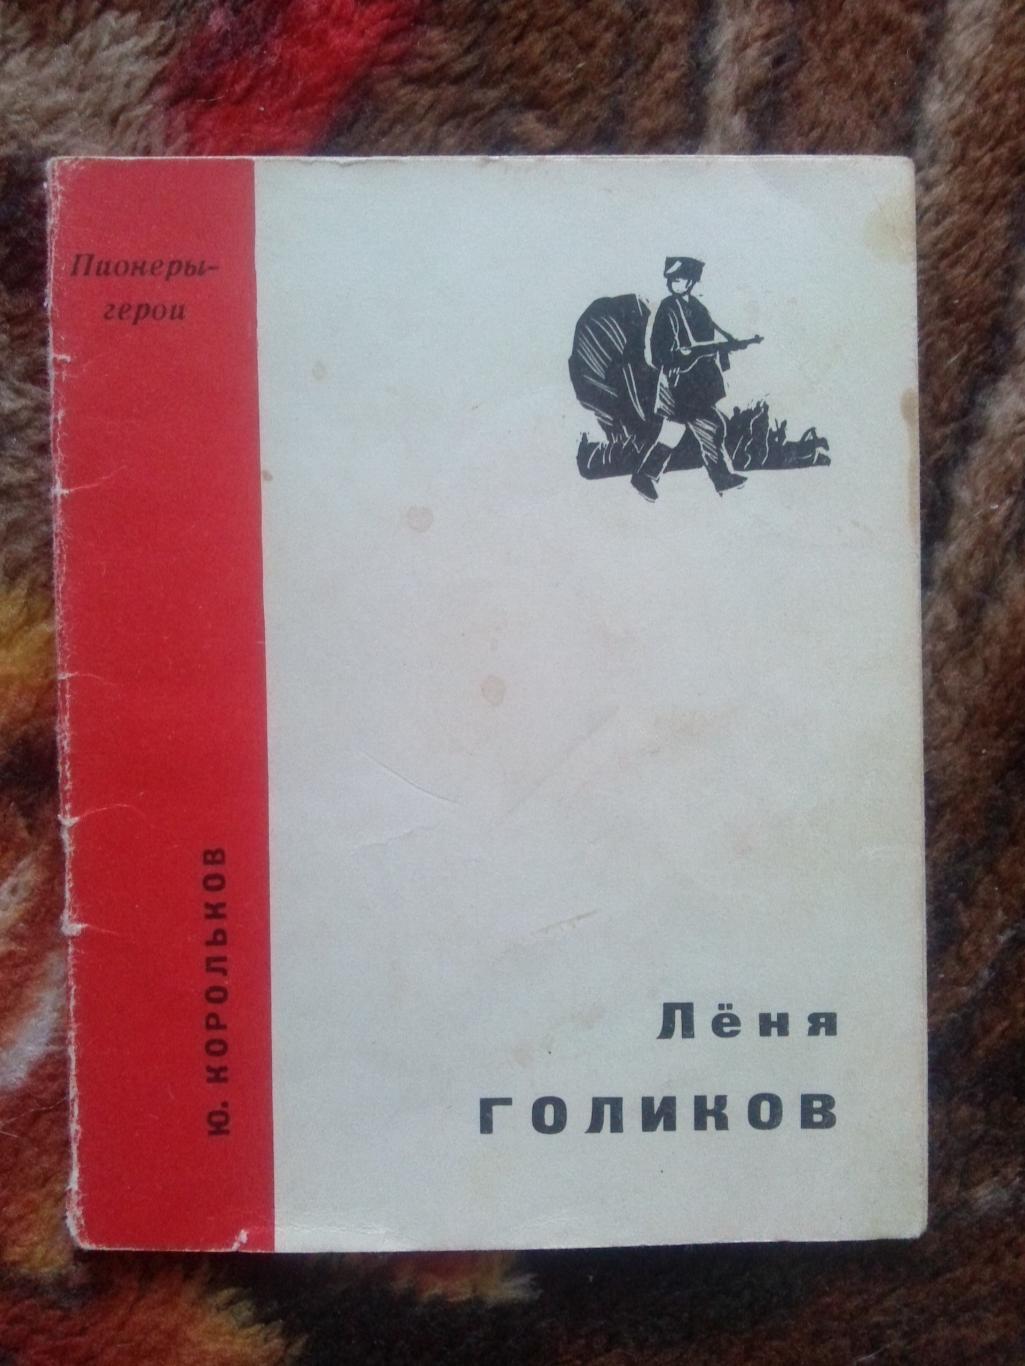 Пионеры-герои (Плакат + брошюра) 1967 г. Леня Голиков (Пионер , агитация) 3